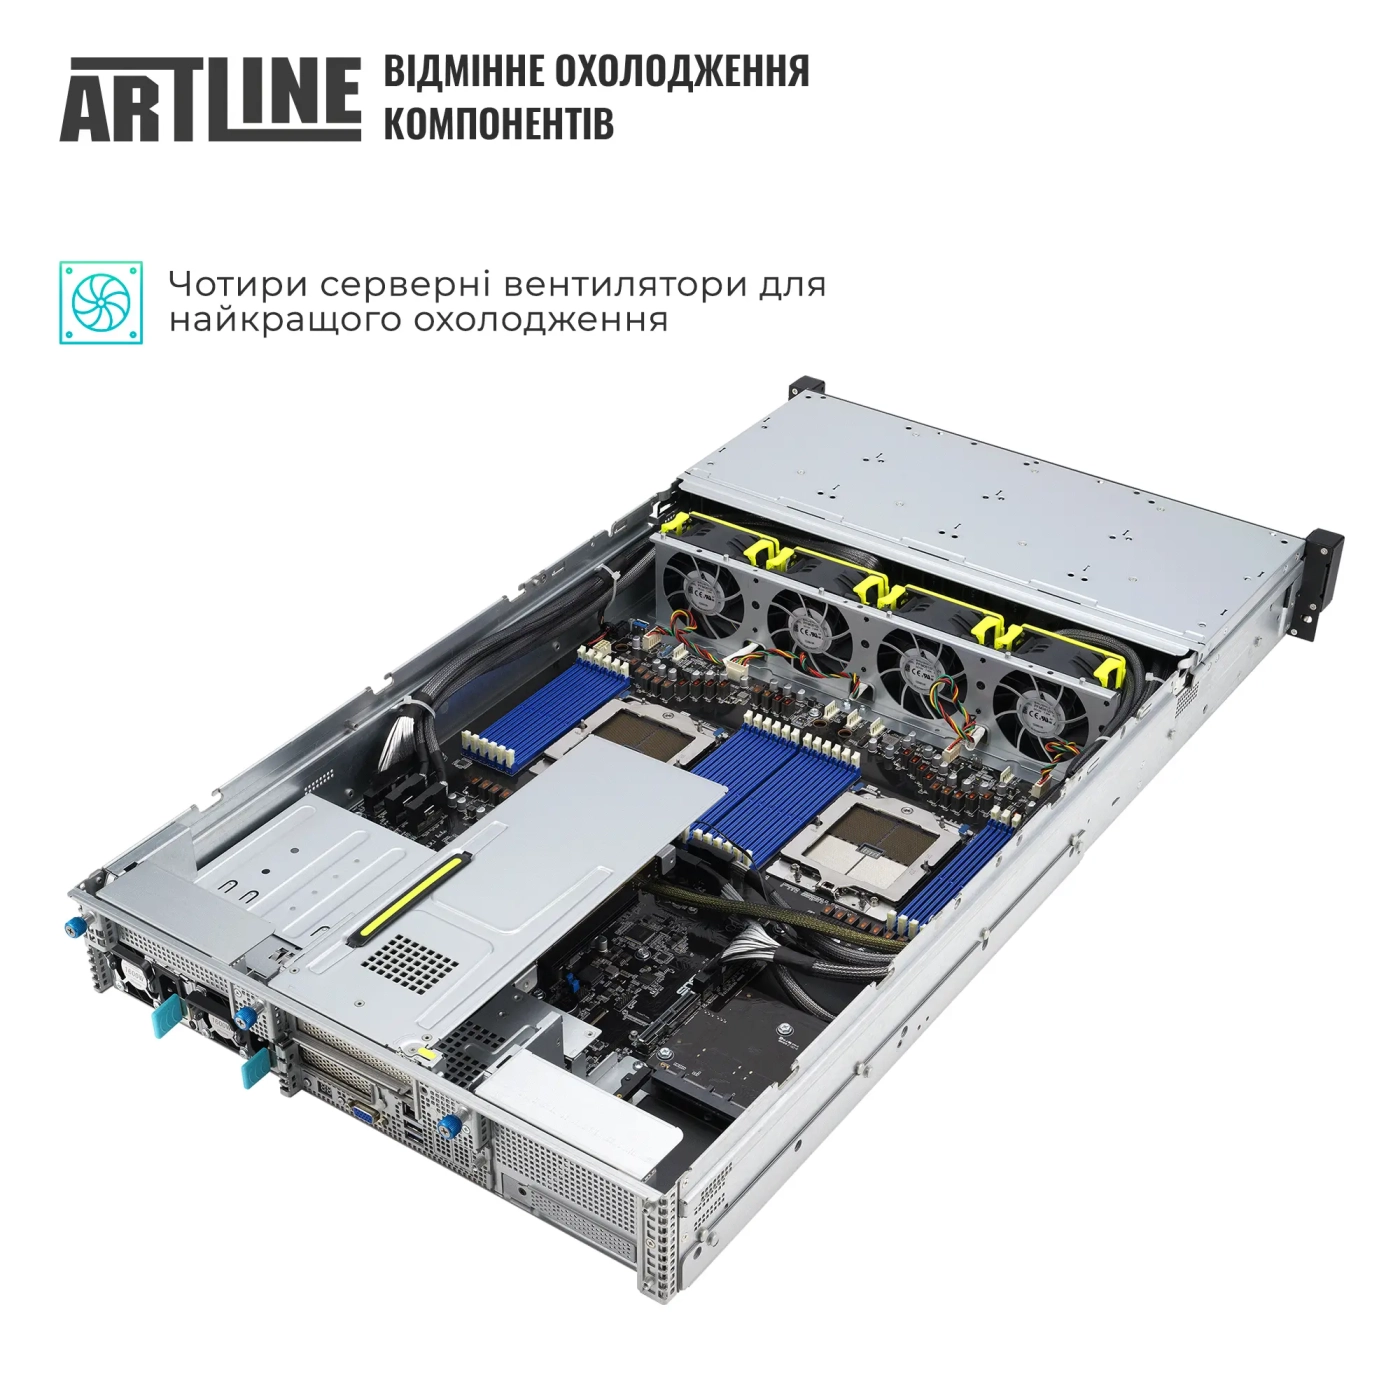 Купить Сервер ARTLINE Business R85 (R85v16) - фото 4